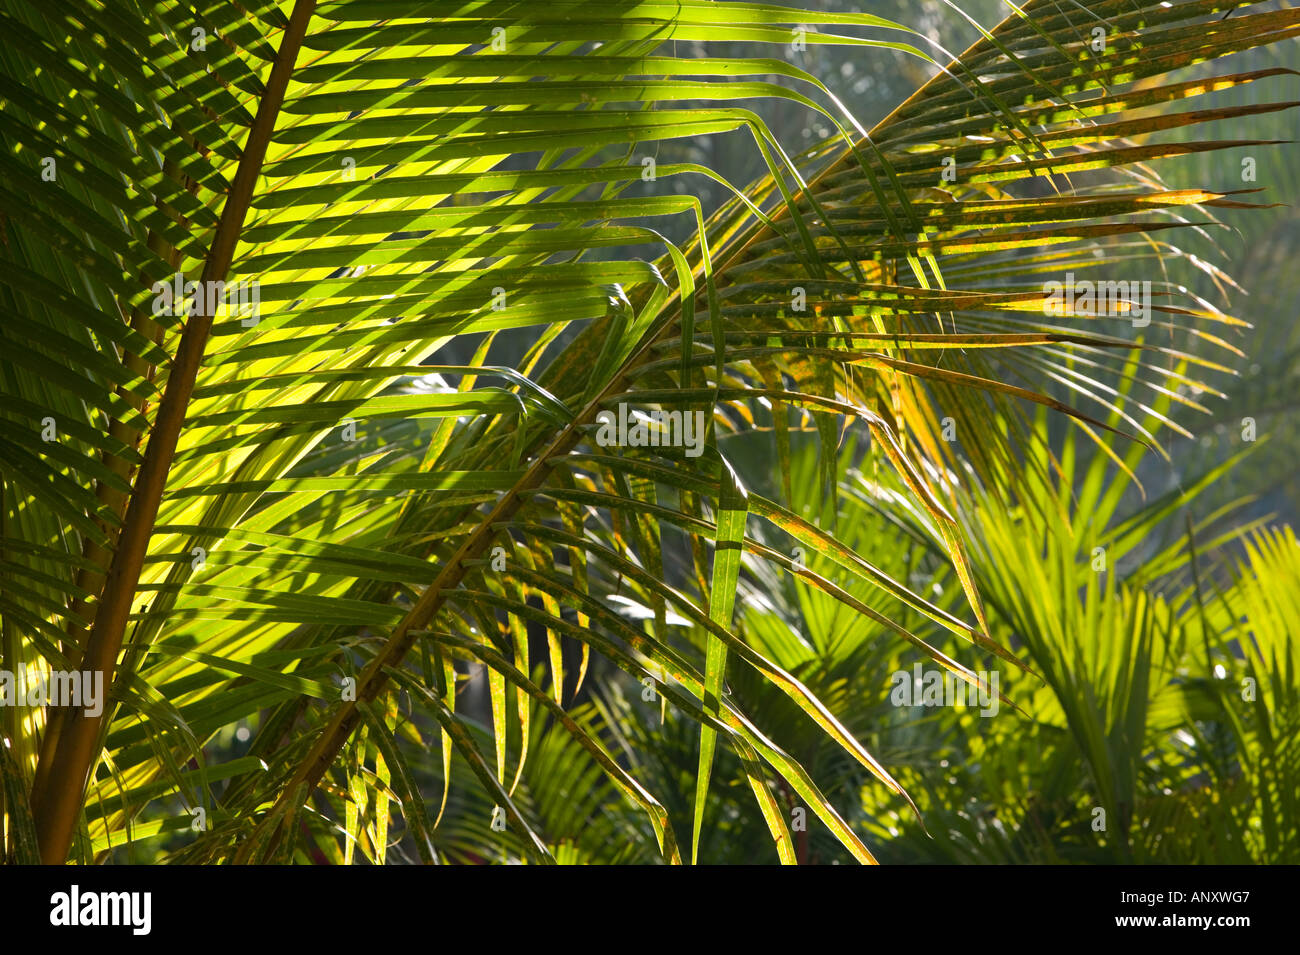 INDIA, Karnataka, Bangalore: Leela Palace Hotel. Garden Tropical Foliage Stock Photo